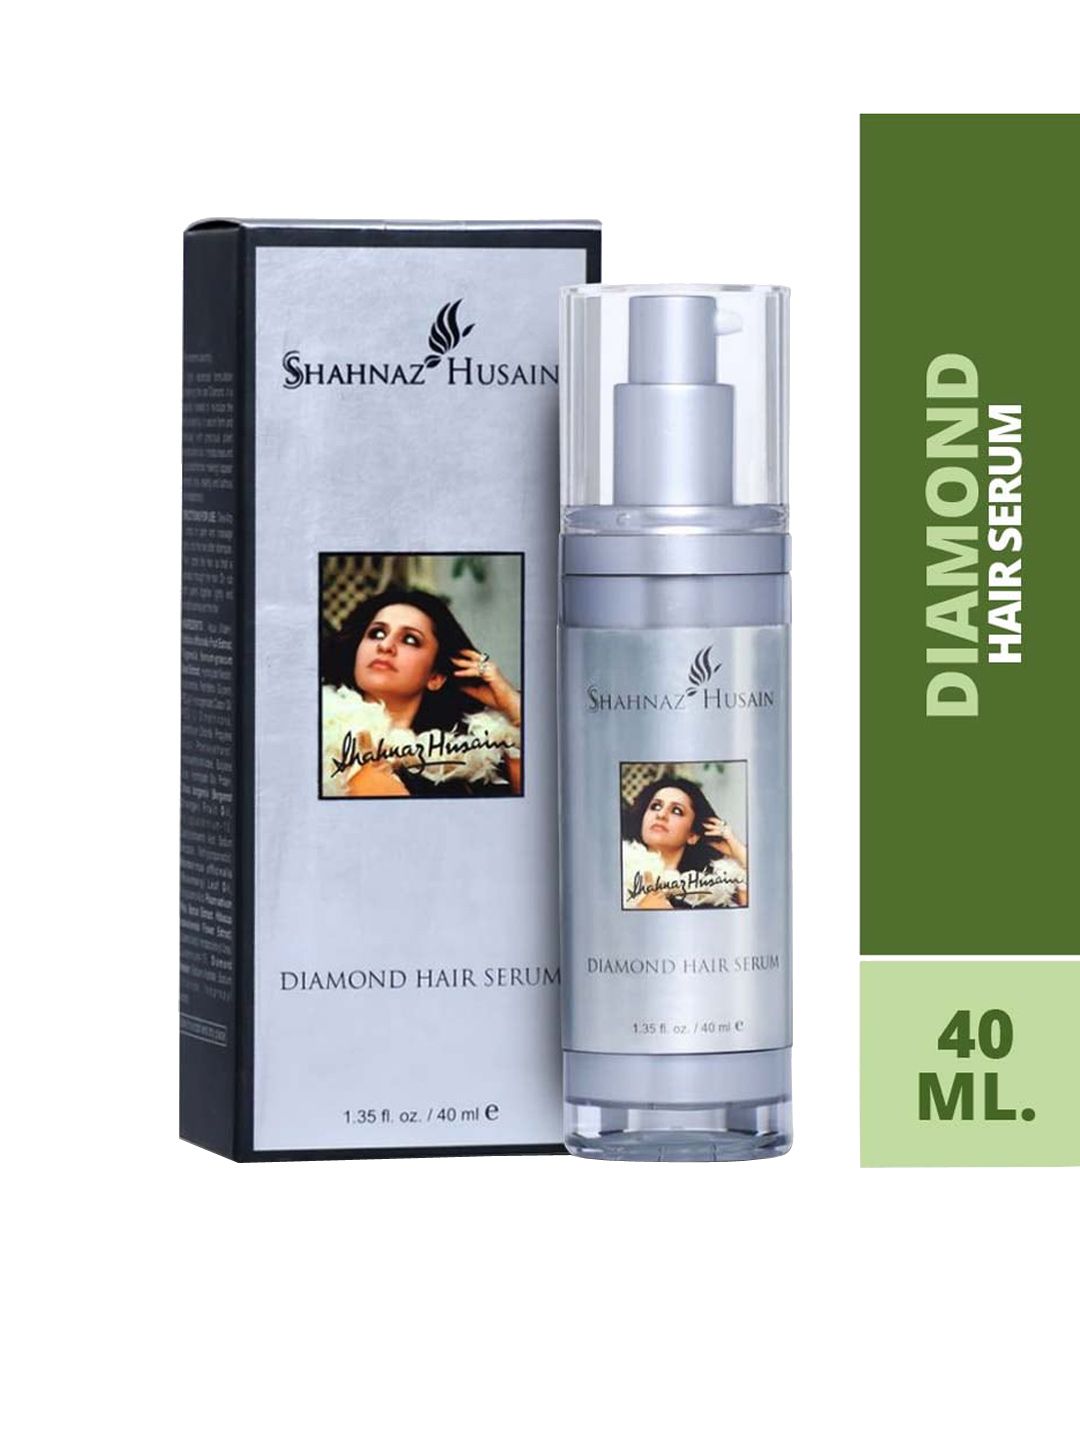 Shahnaz Husain Diamond Hair Serum 40 ML Price in India